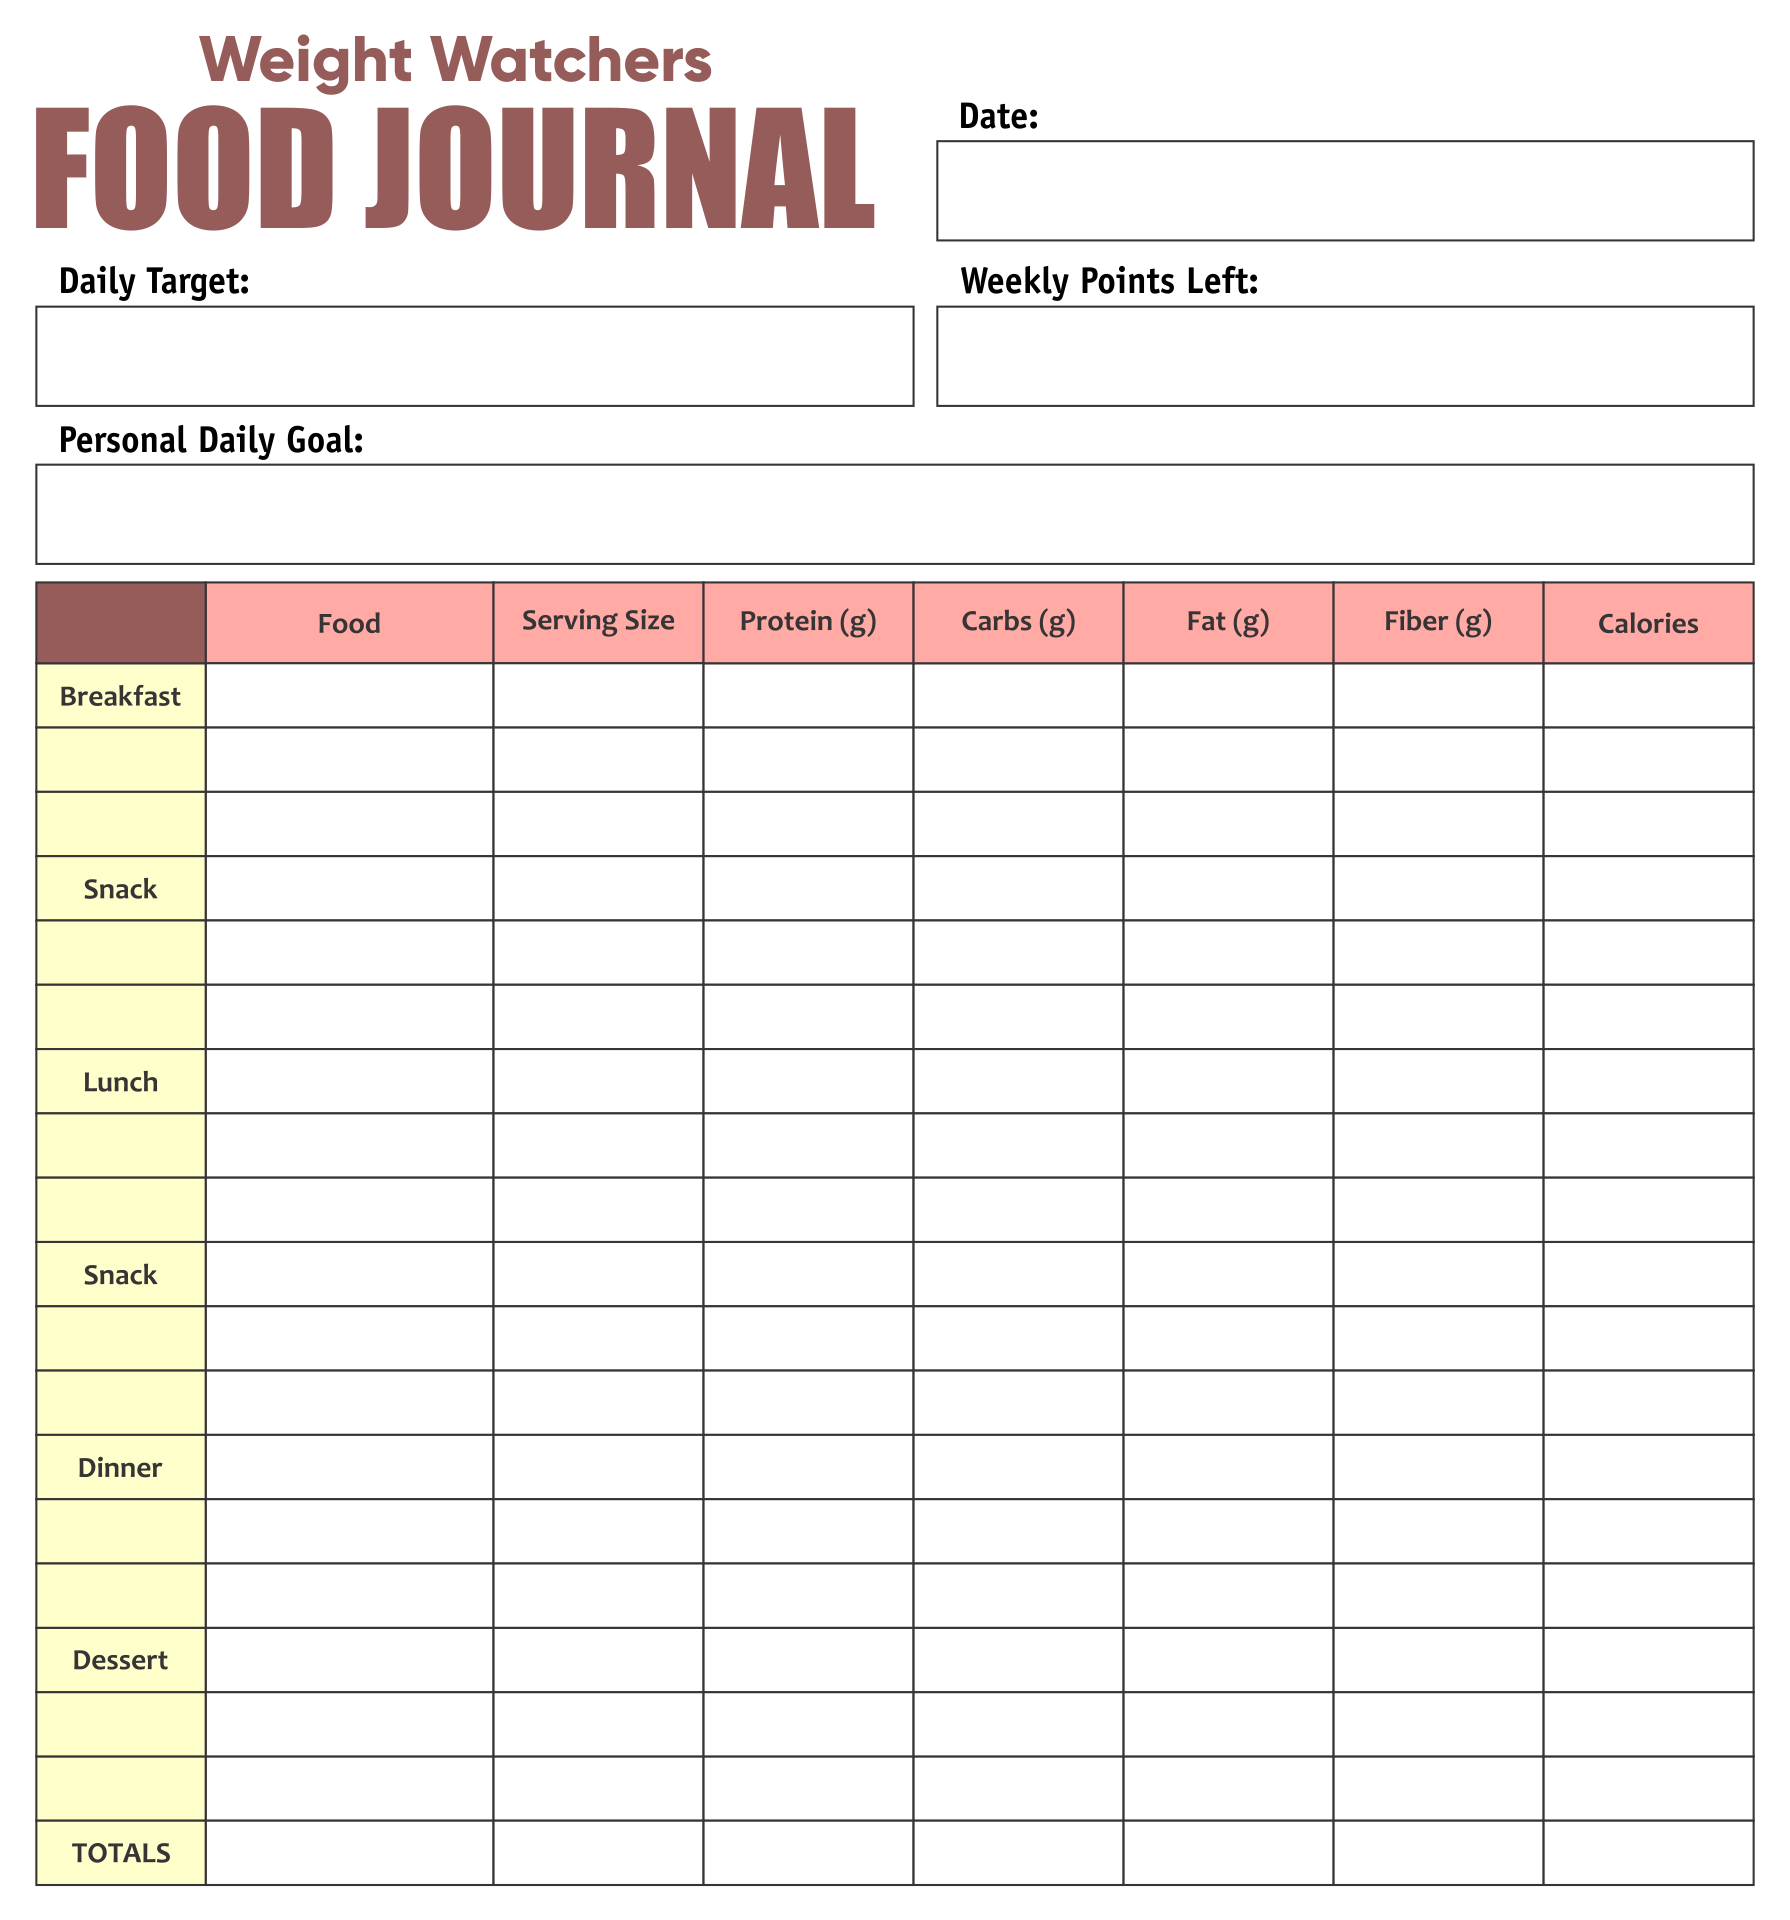 Weight Watchers Food Journal Template